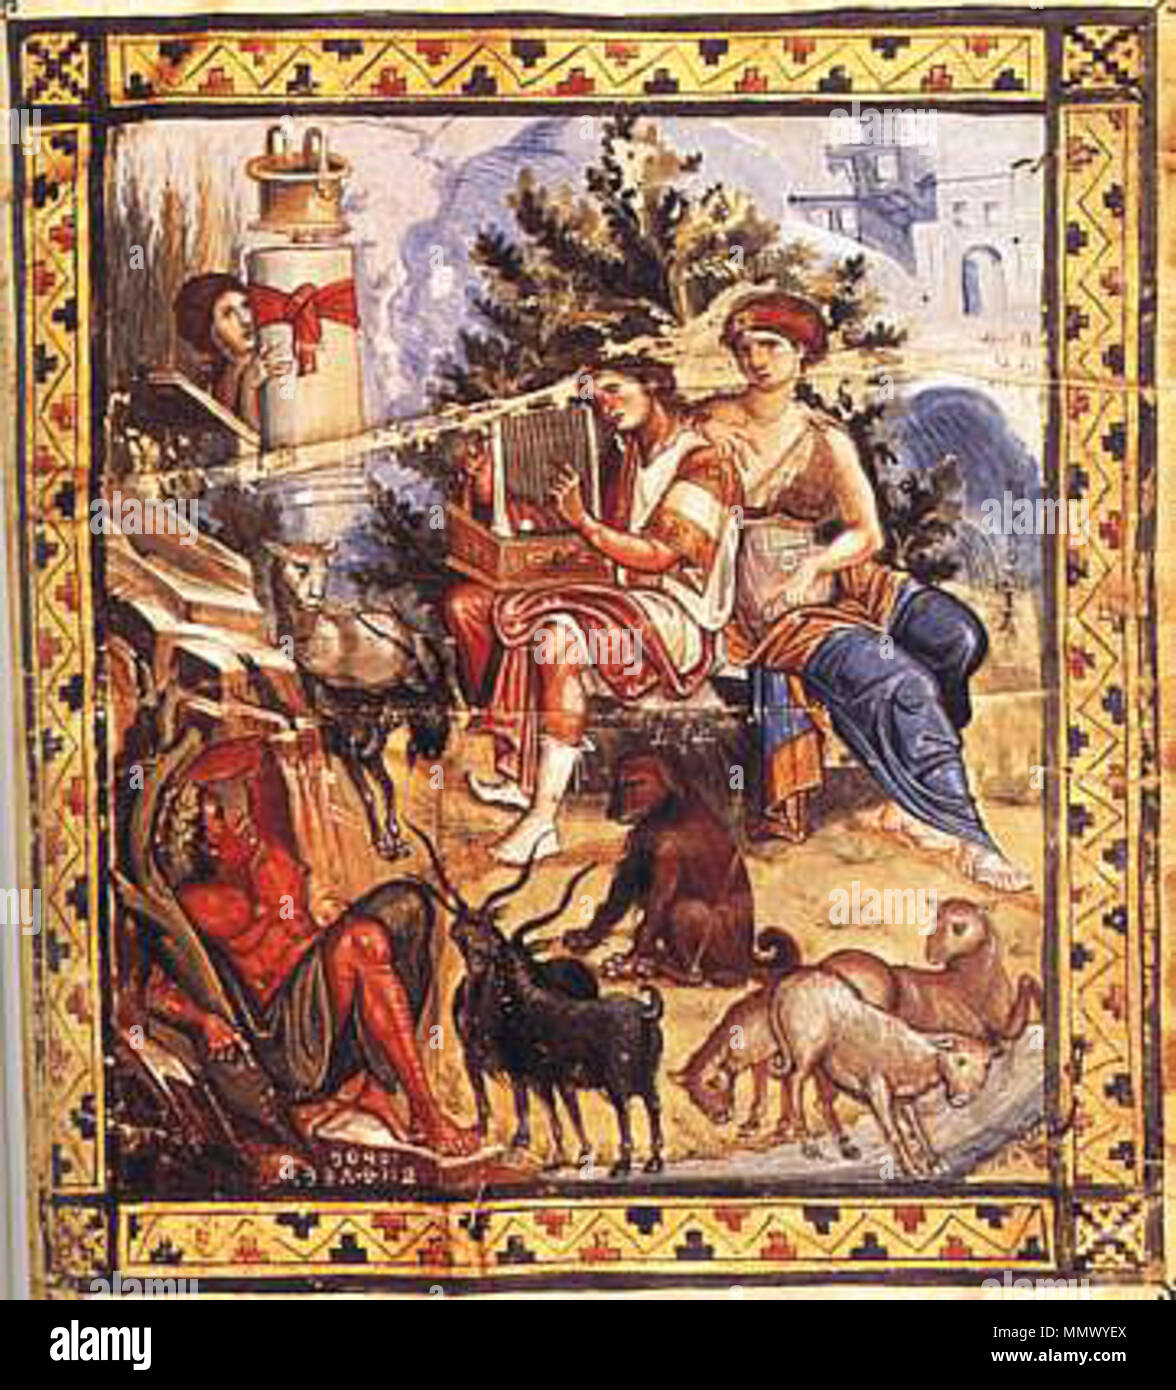 . Englisch: Malerei von David mit seiner Harfe, Paris Psalter, C. 960, Konstantinopel. ca. 960. Artist: Unbekannt David - Harfe Stockfoto